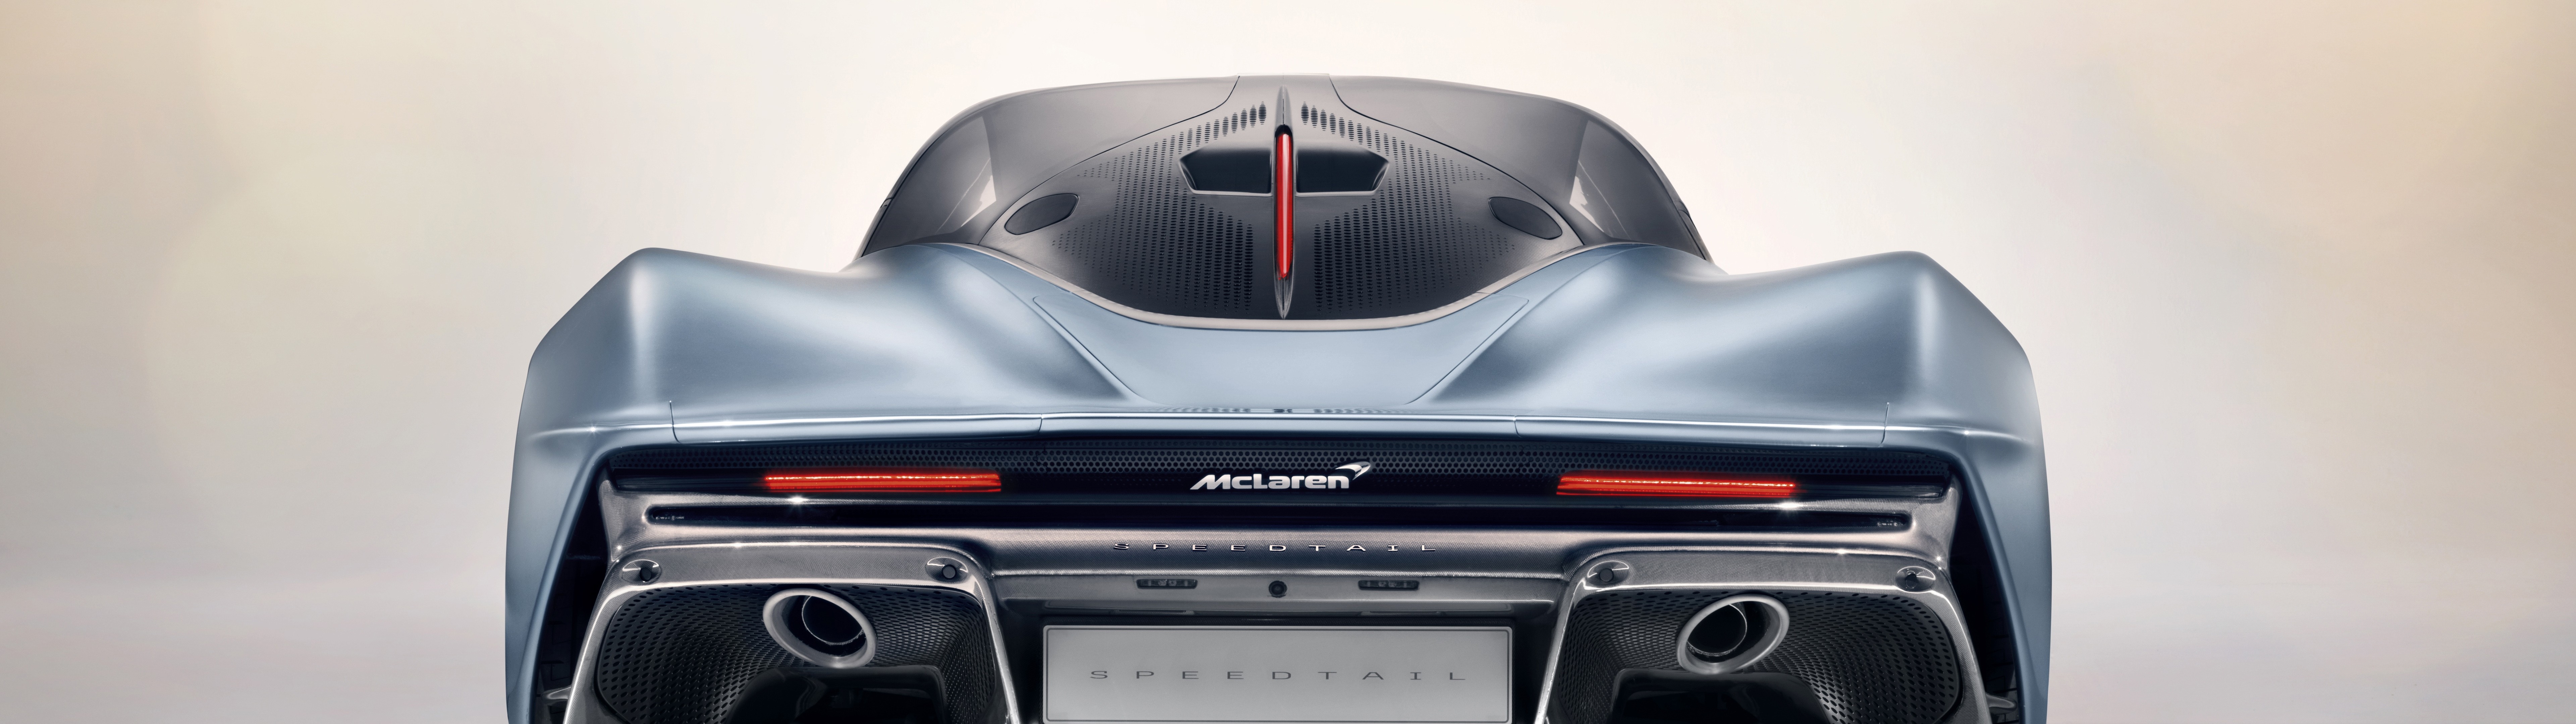 mclaren-speedtail-supercars-rear-view.jpeg